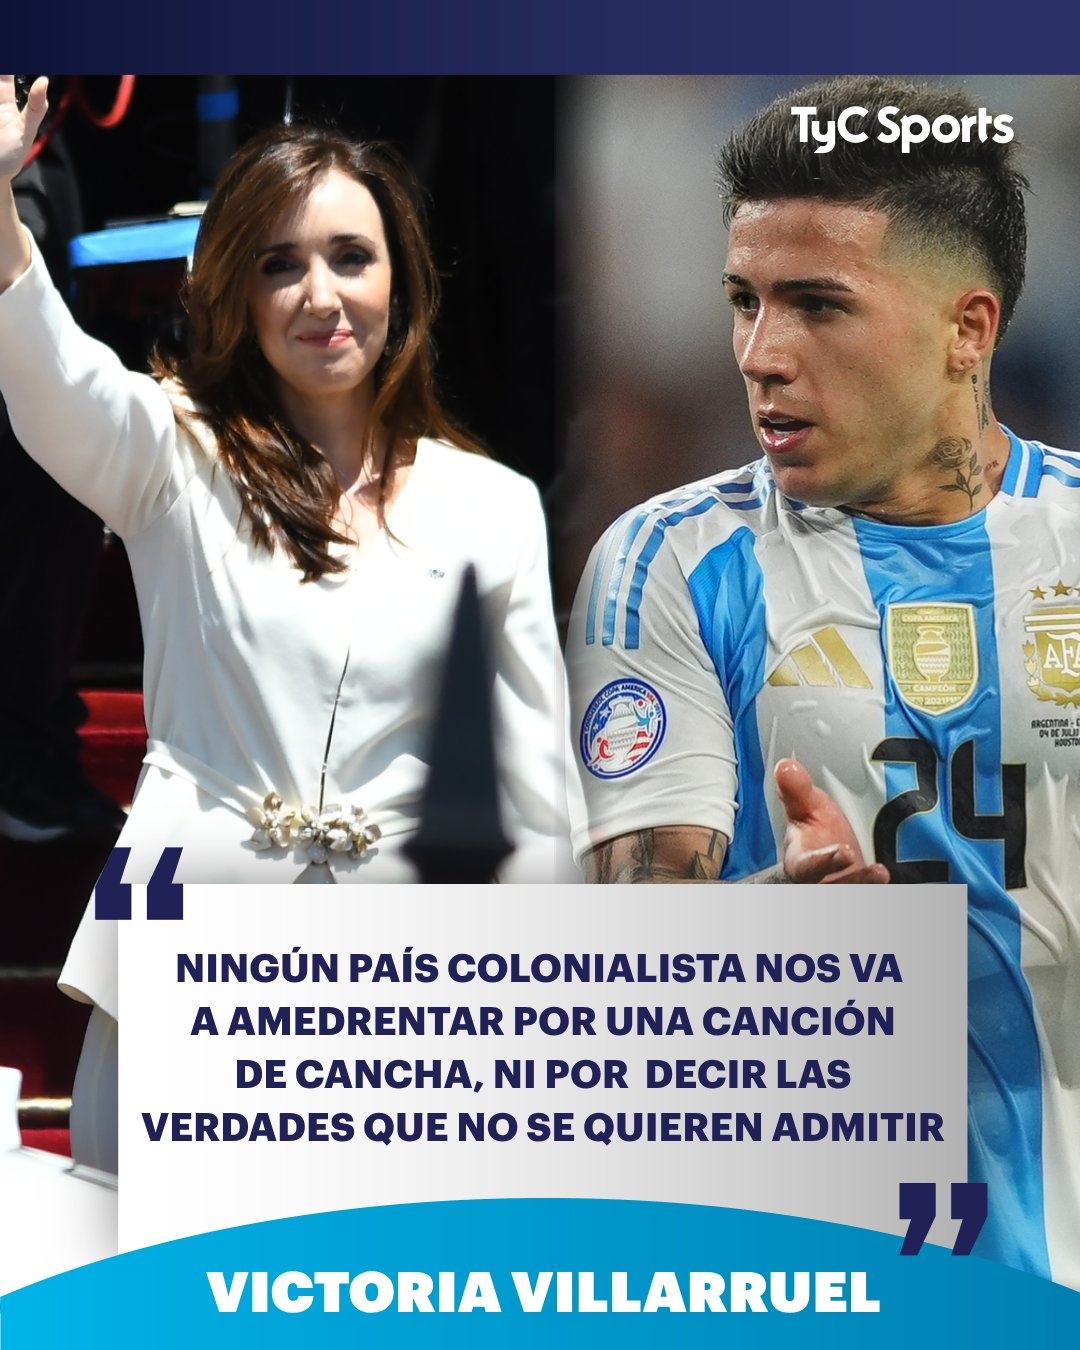 阿根廷副总统支持球员反击法国队歧视 